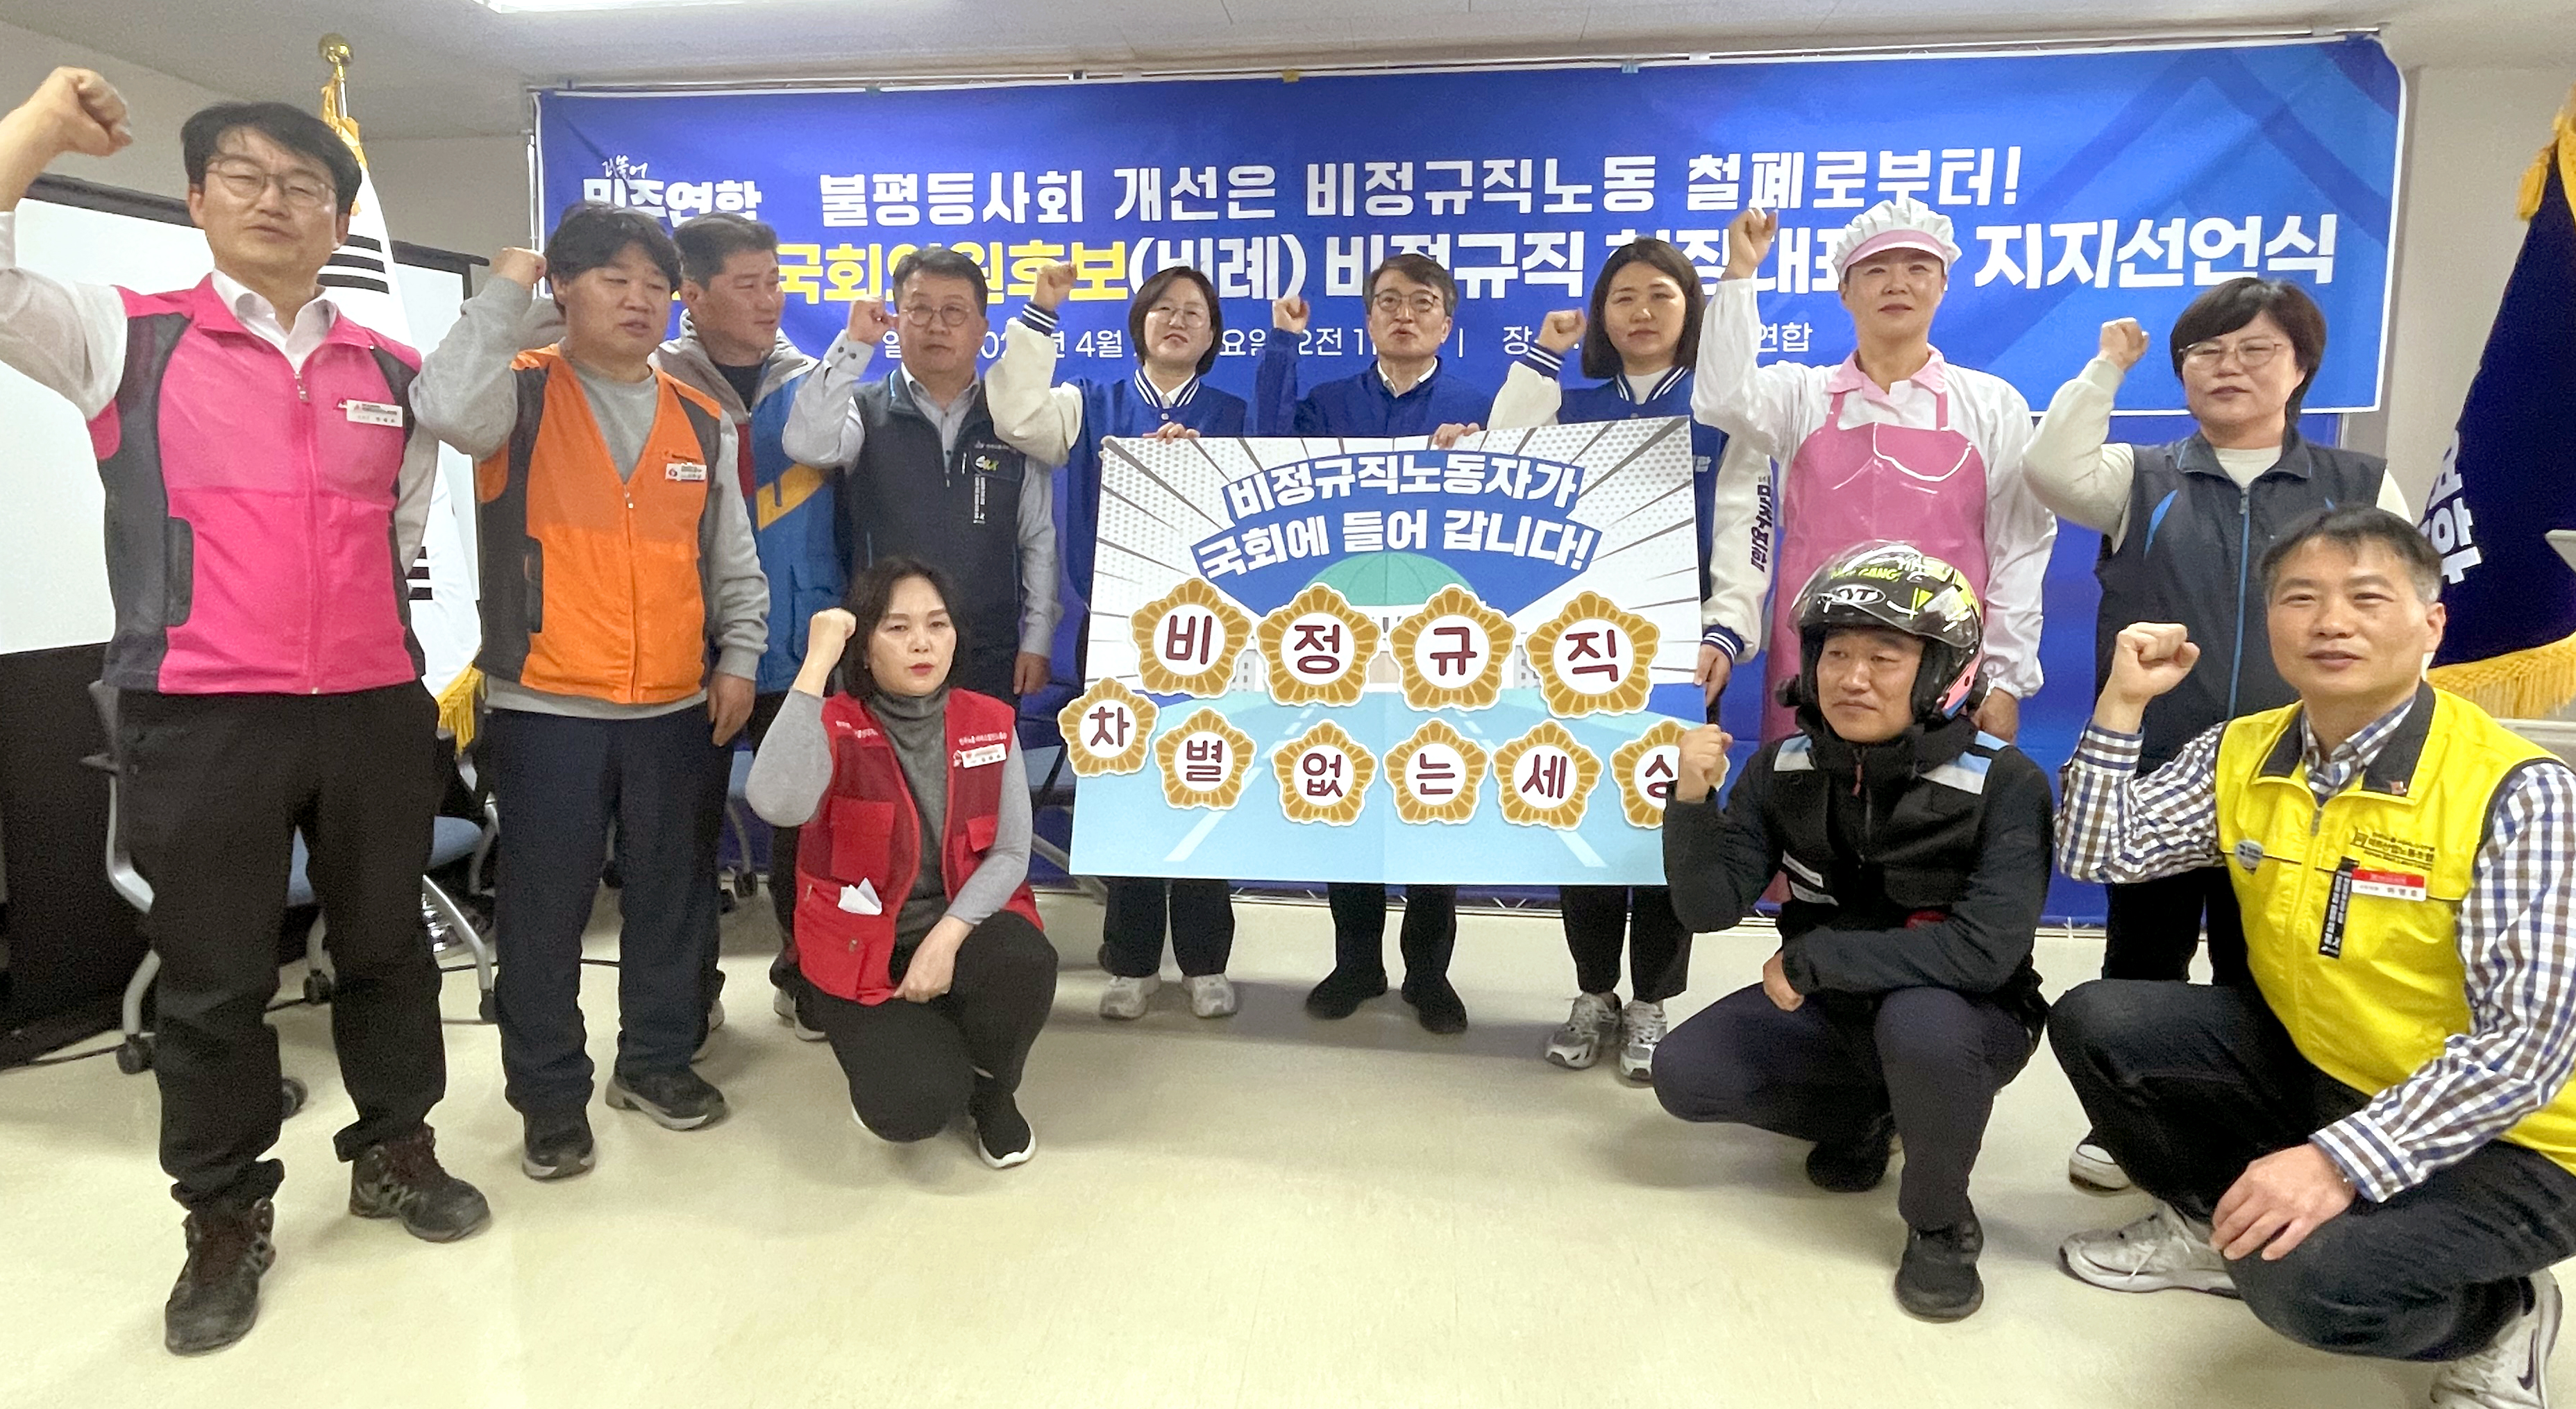 학교비정규직노동자, 22대 총선 요구안 발표 기자회견 사진